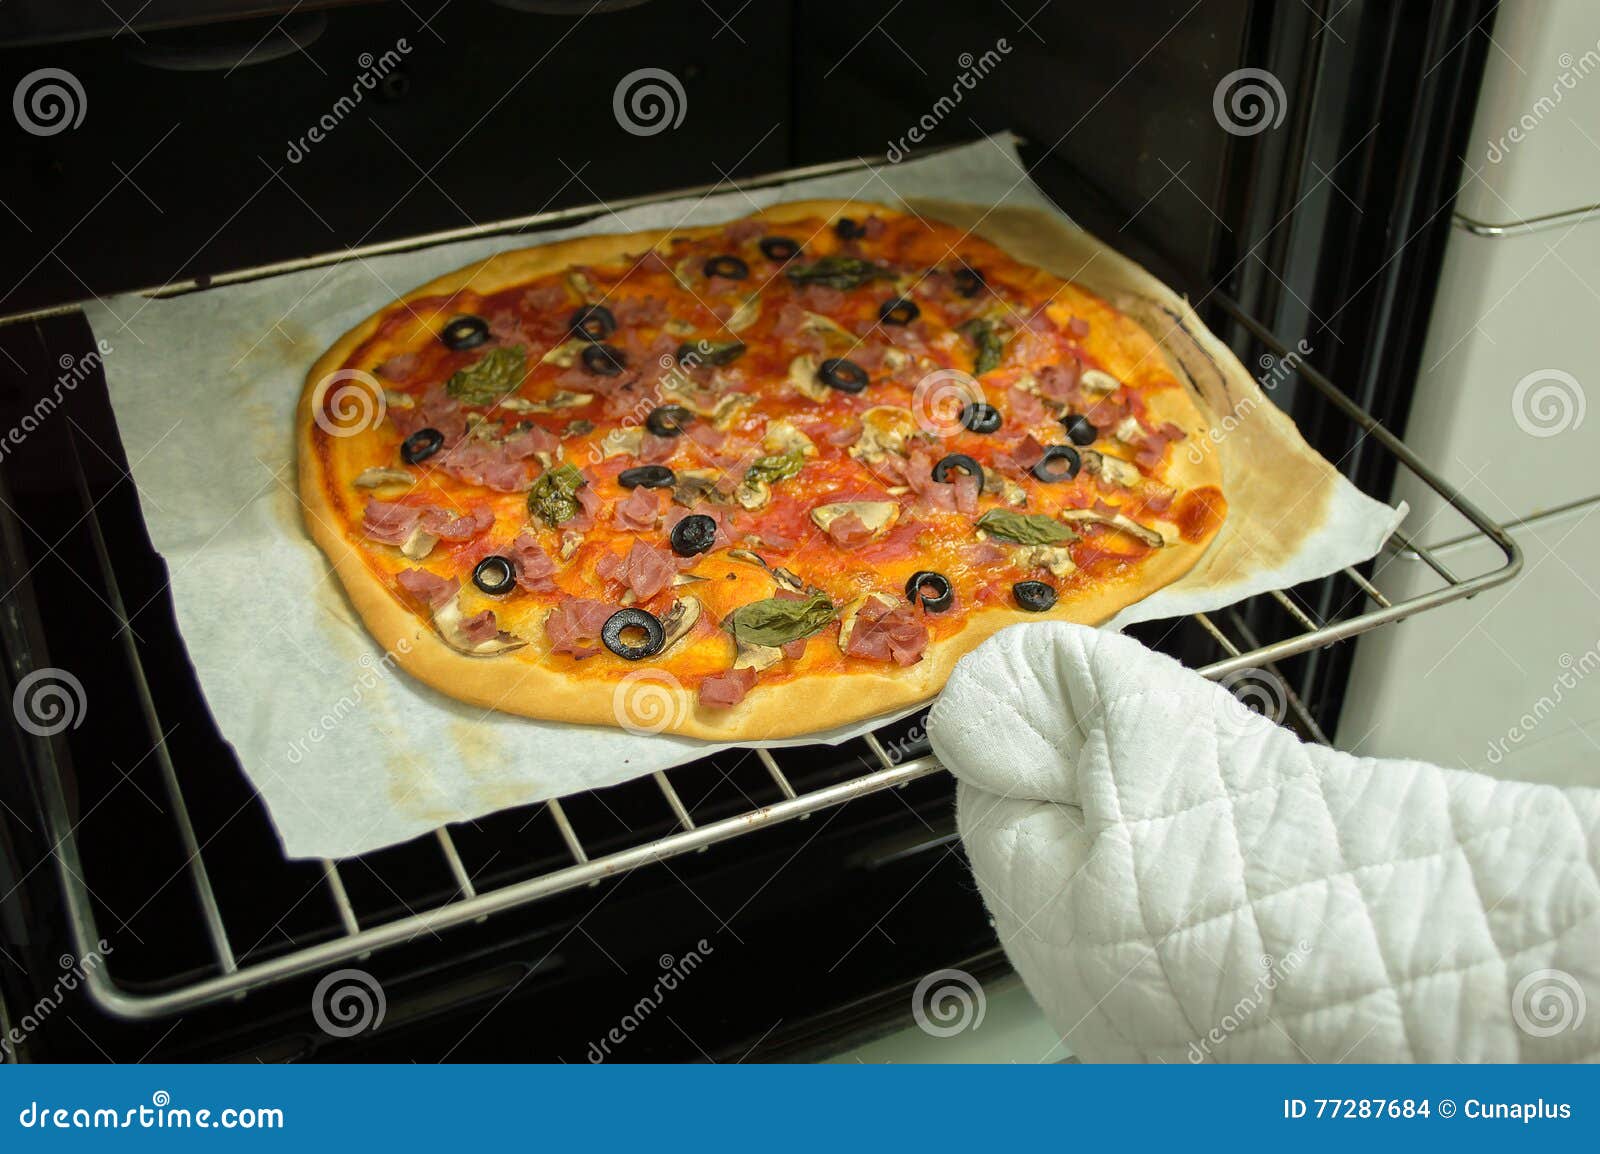 если пицца пересохла в духовке что делать фото 10